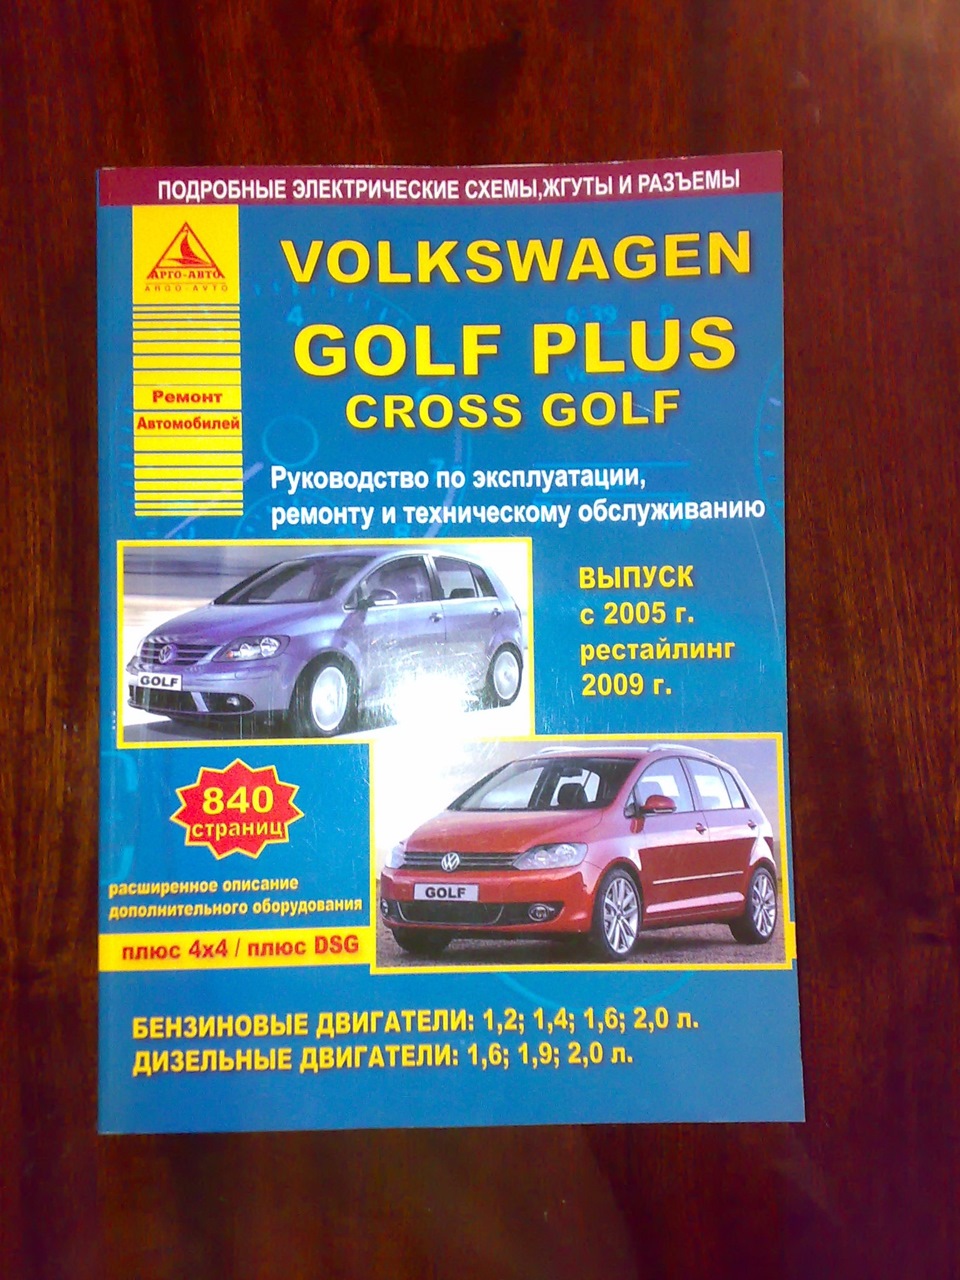 Книга фольксваген ремонт. Фольксваген гольф плюс 2008 1.6 книга по ремонту. VW Golf 6 книга по ремонту. Книга Volkswagen Golf Plus. Книга по ремонту Golf Plus.